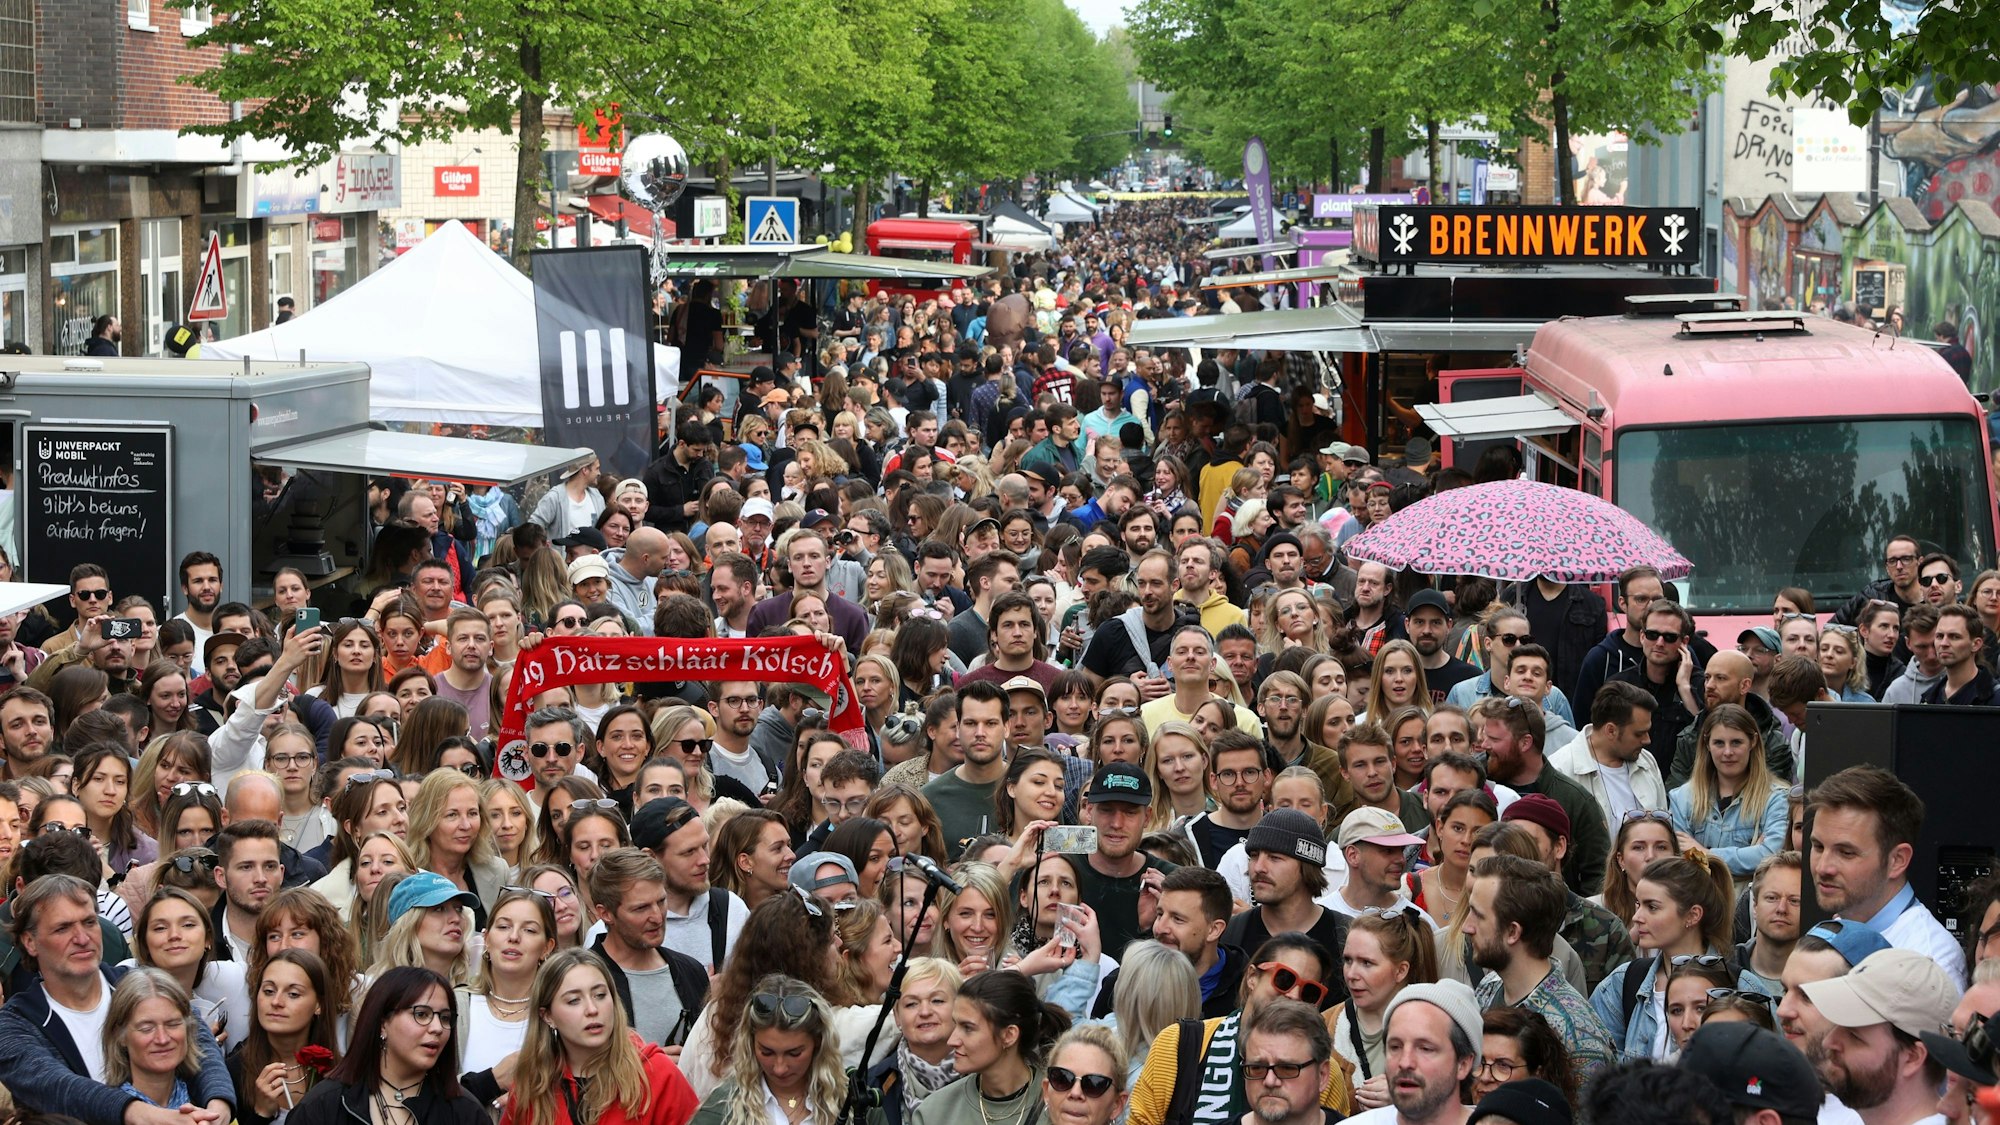 c/o Pop Rundgang über die kostenlosen Konzerte und dem Markt auf der Venloer Straße.